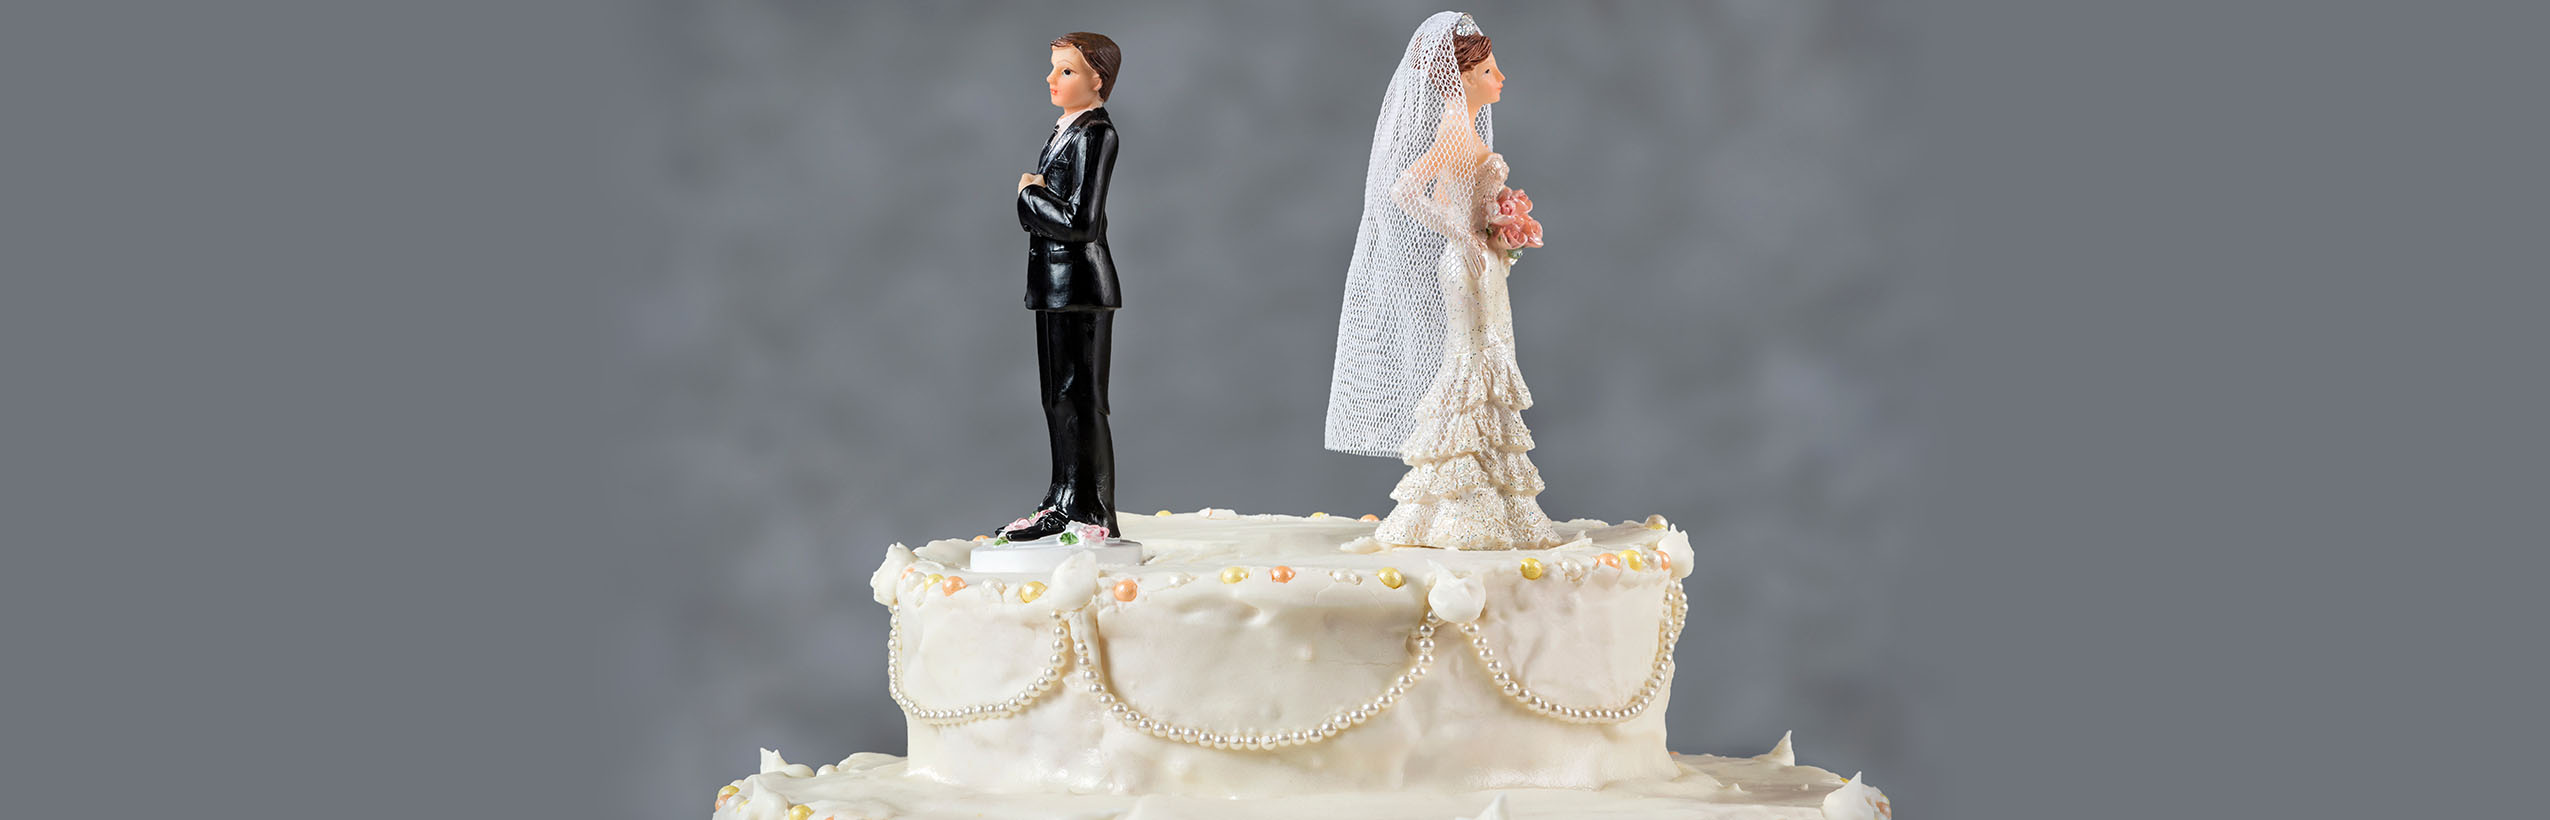 scheidungsanwalt muenchen  - Scheidung